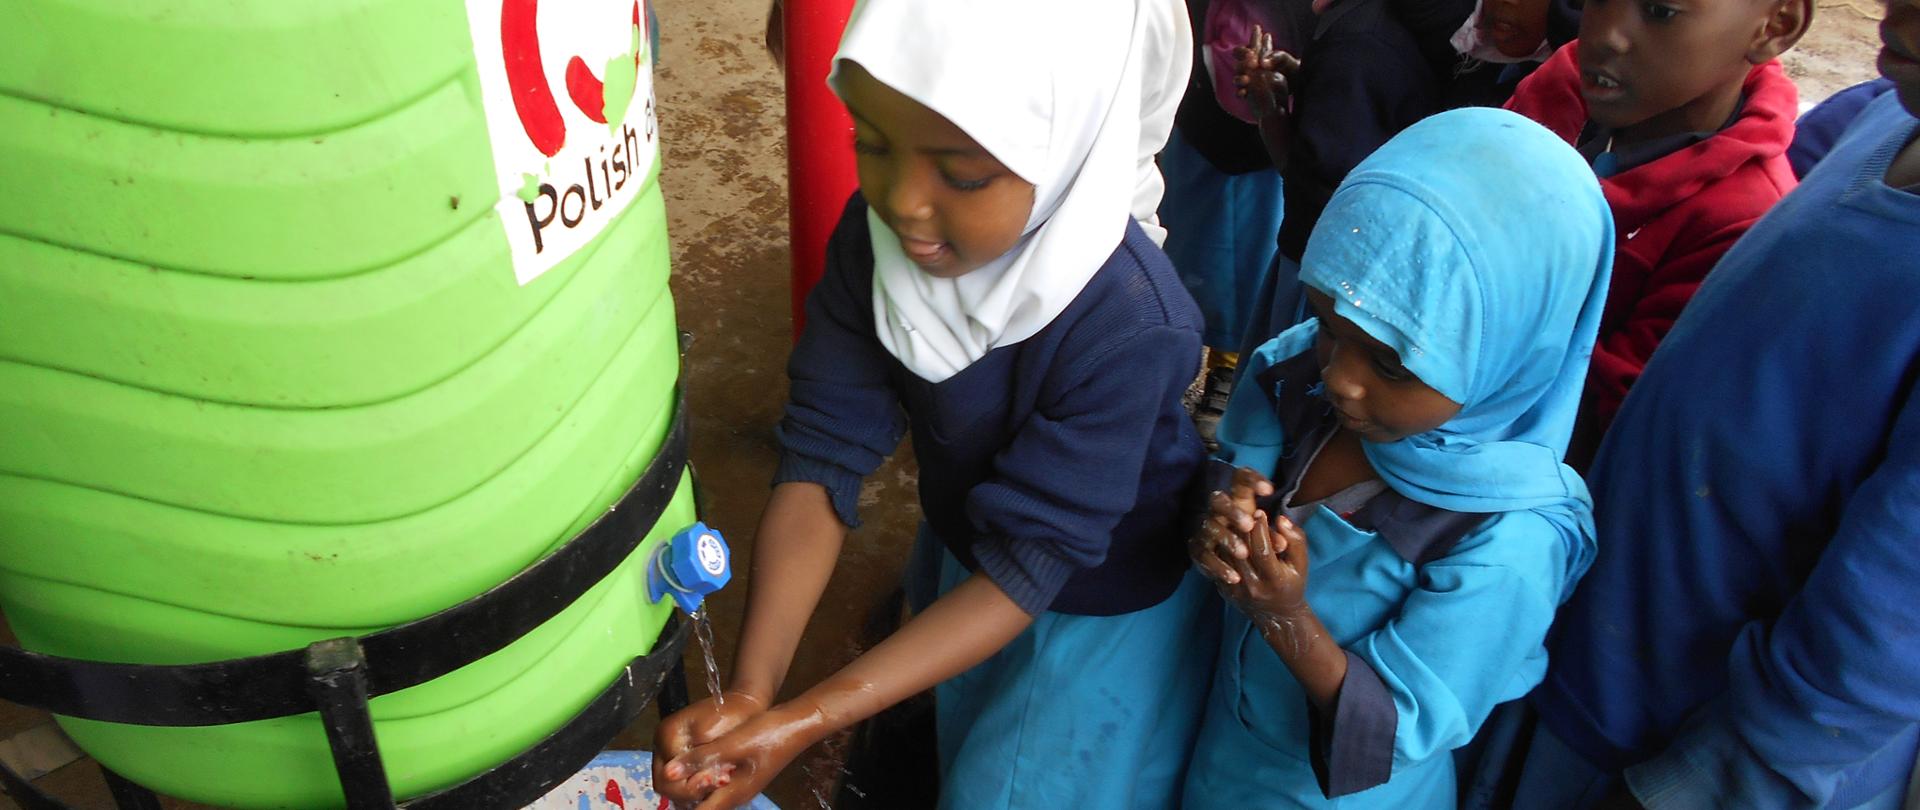 Zdrowe przedszkole - poprawa warunków sanitarnych oraz promocja zdrowia dzieci w wieku przedszkolnym z nieformalnej dzielnicy Mathare w Nairobi fot. Partners Polska